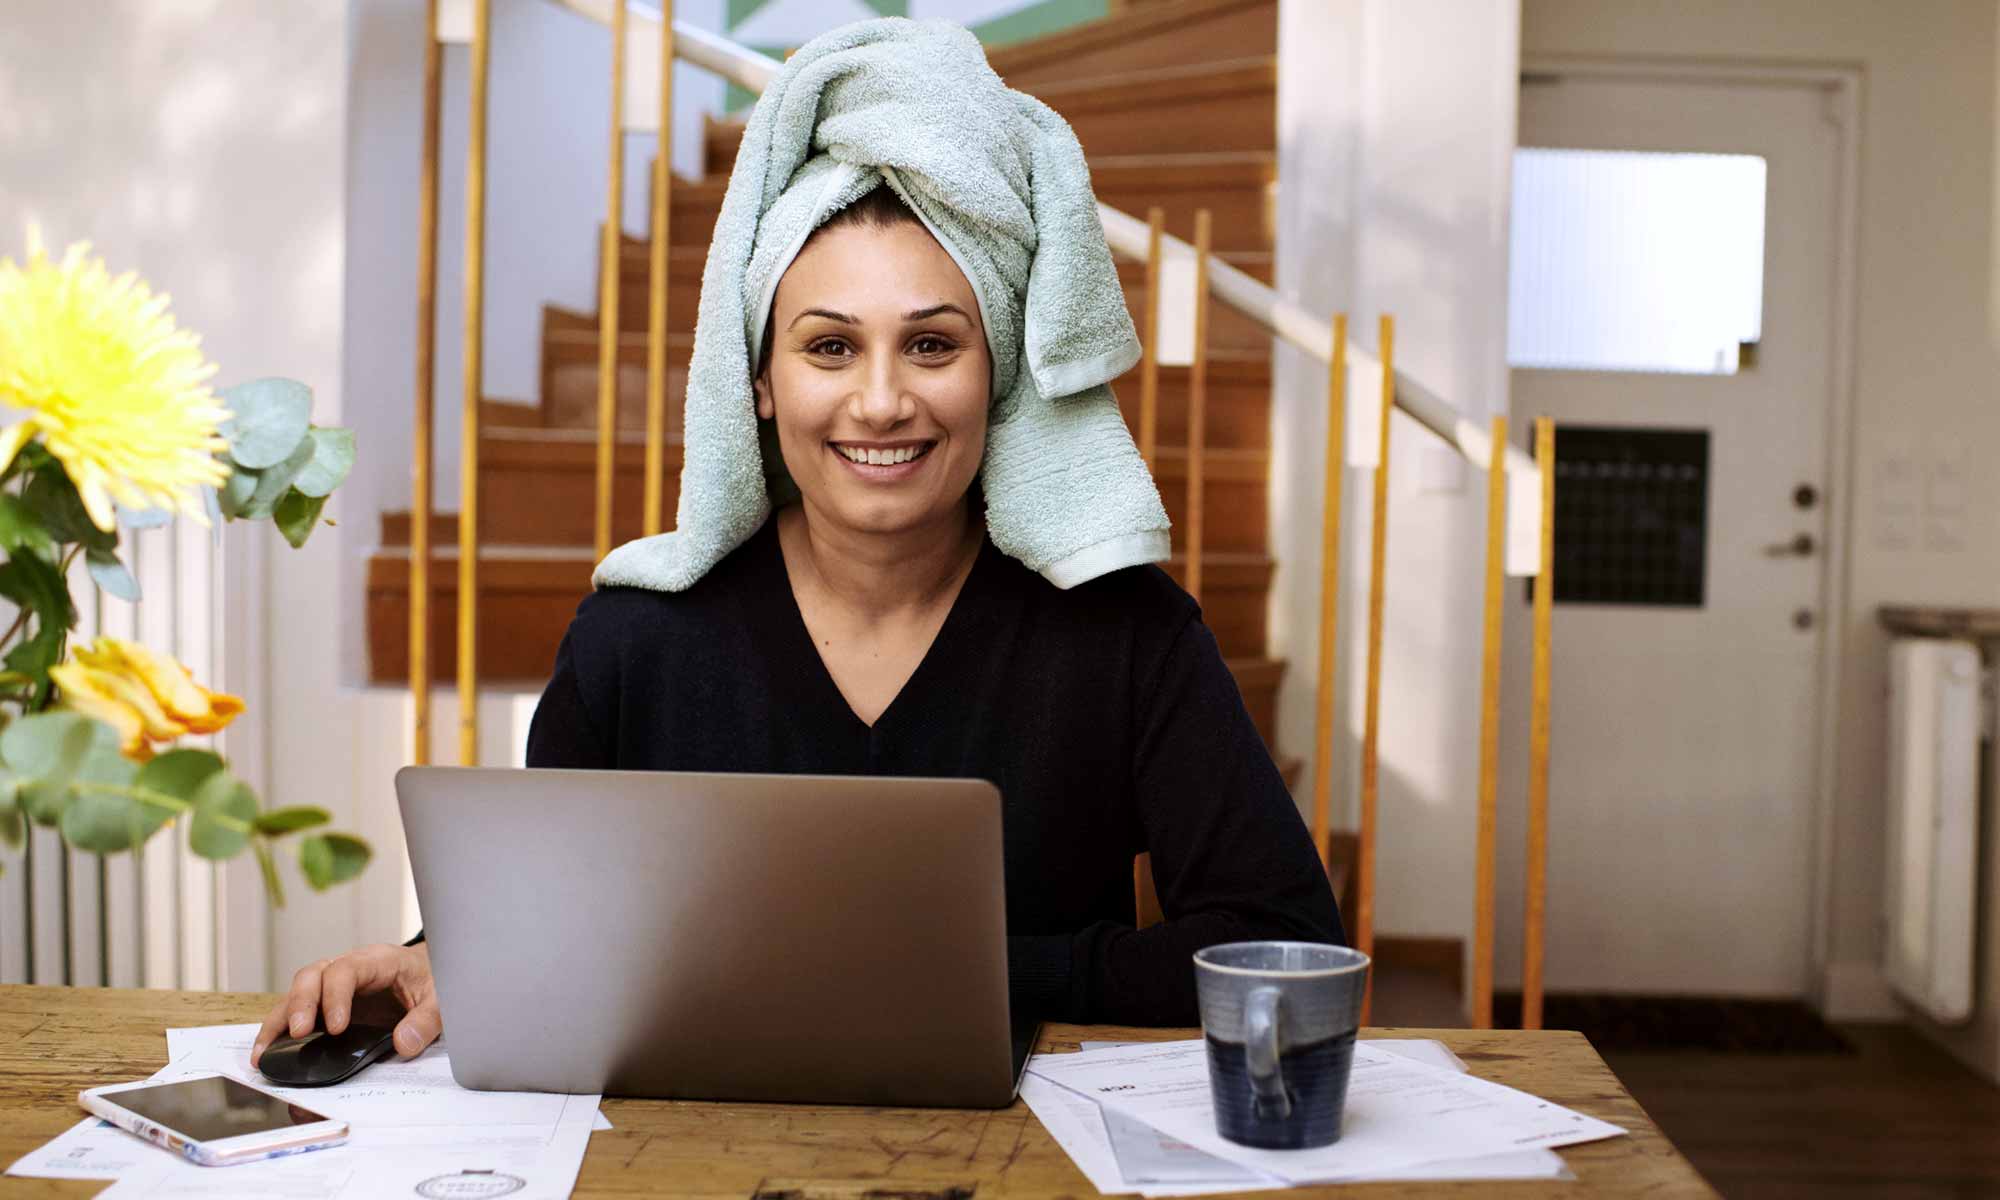 Kvinna med handduk virad runt huvudet sitter och ler framför datorn